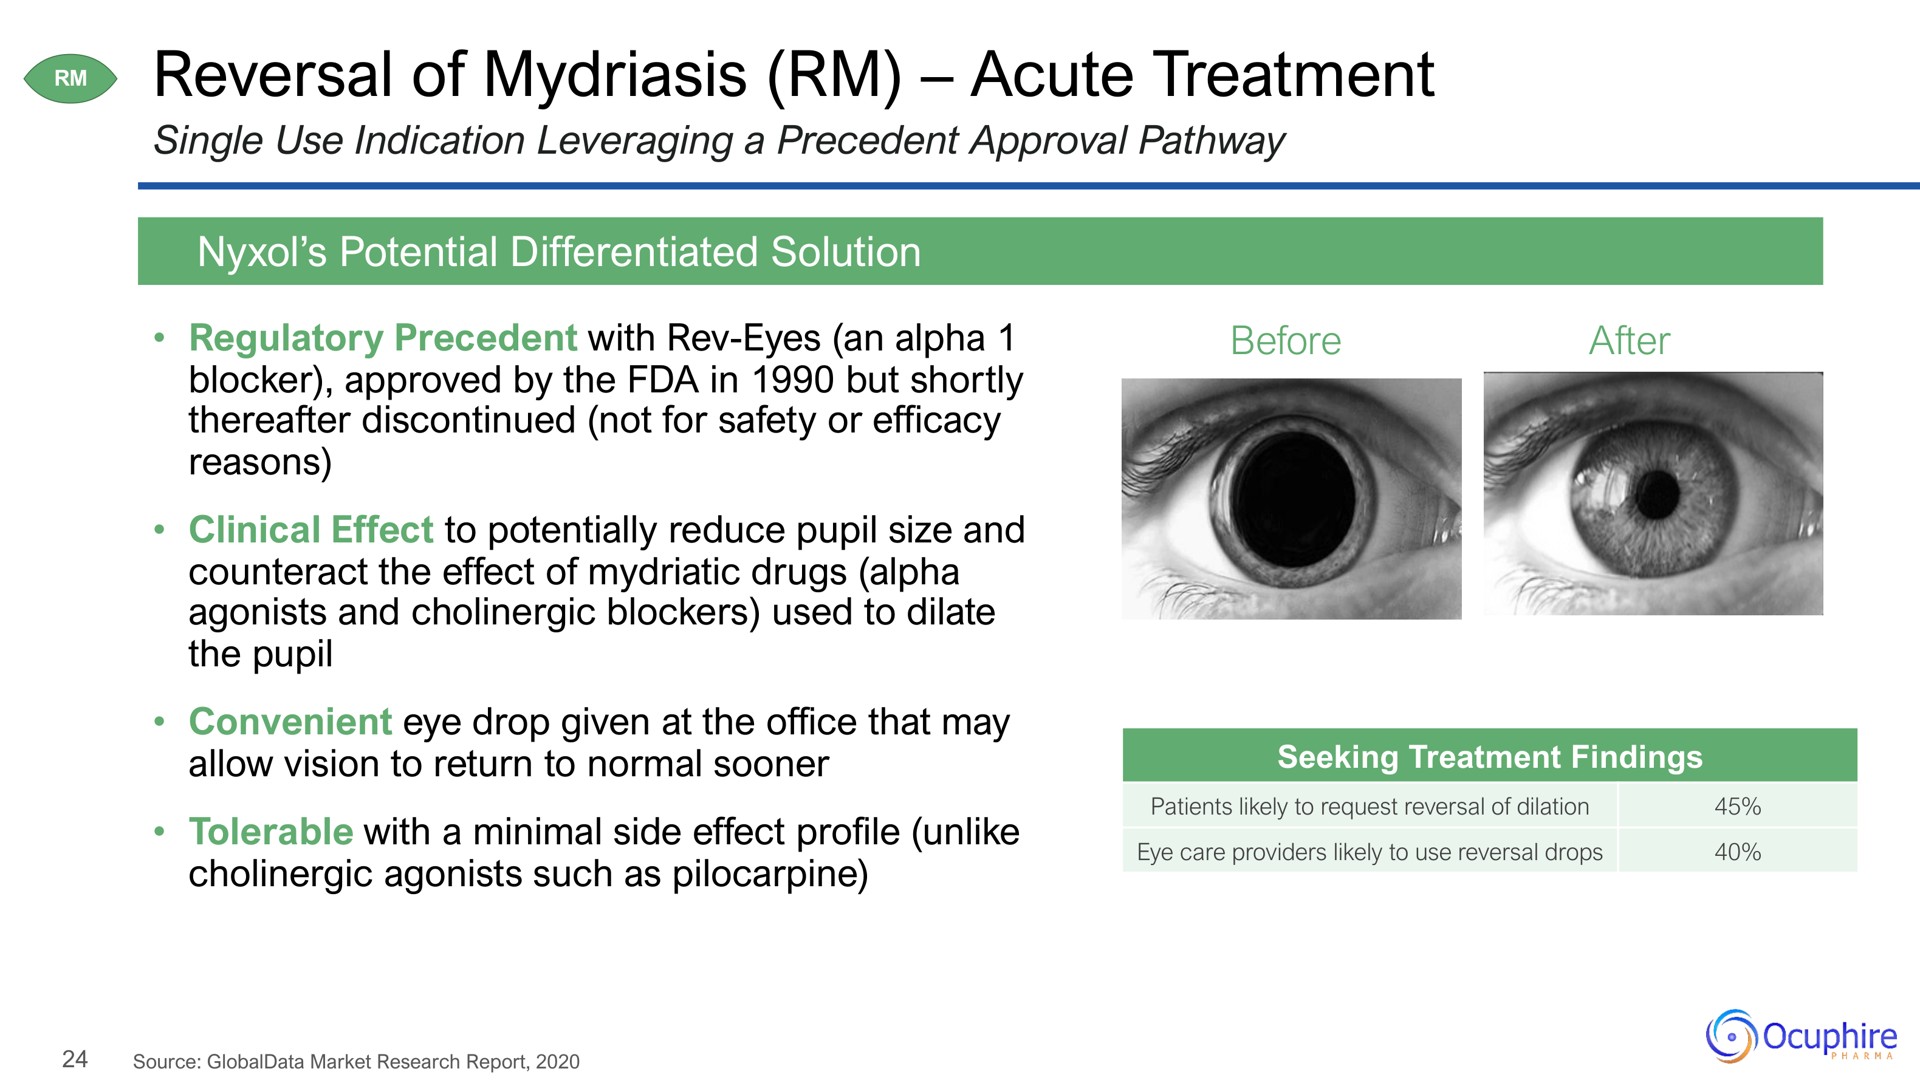 reversal of mydriasis acute treatment | Ocuphire Pharma